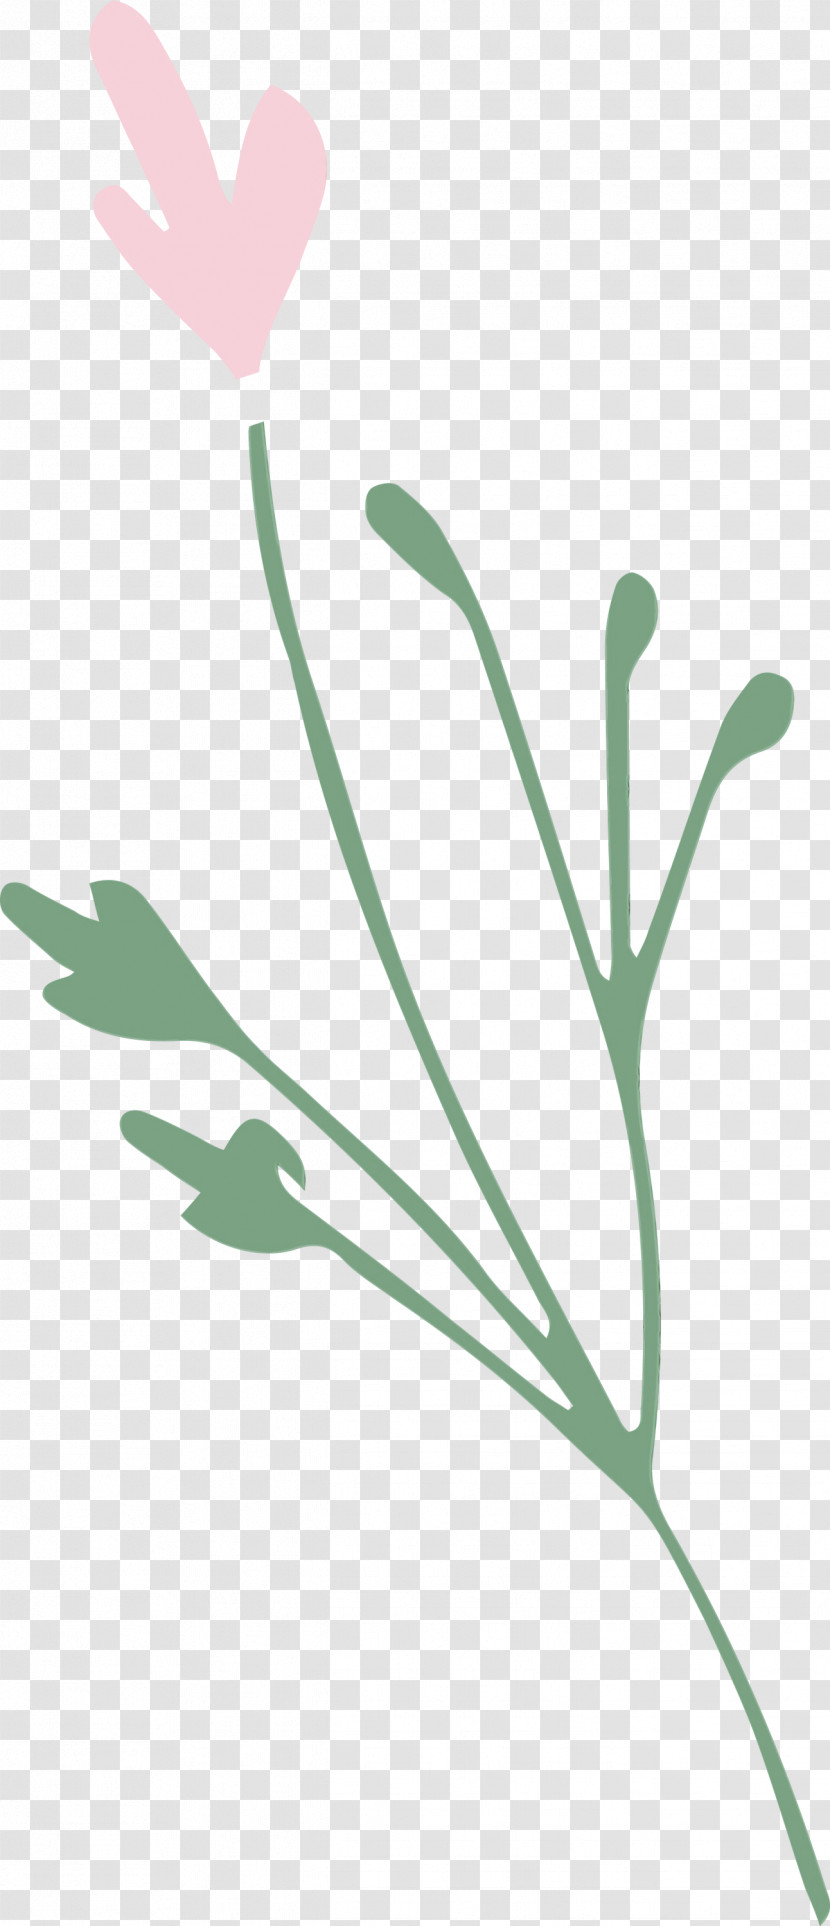 Plant Stem Petal Leaf Flower Plants Transparent PNG